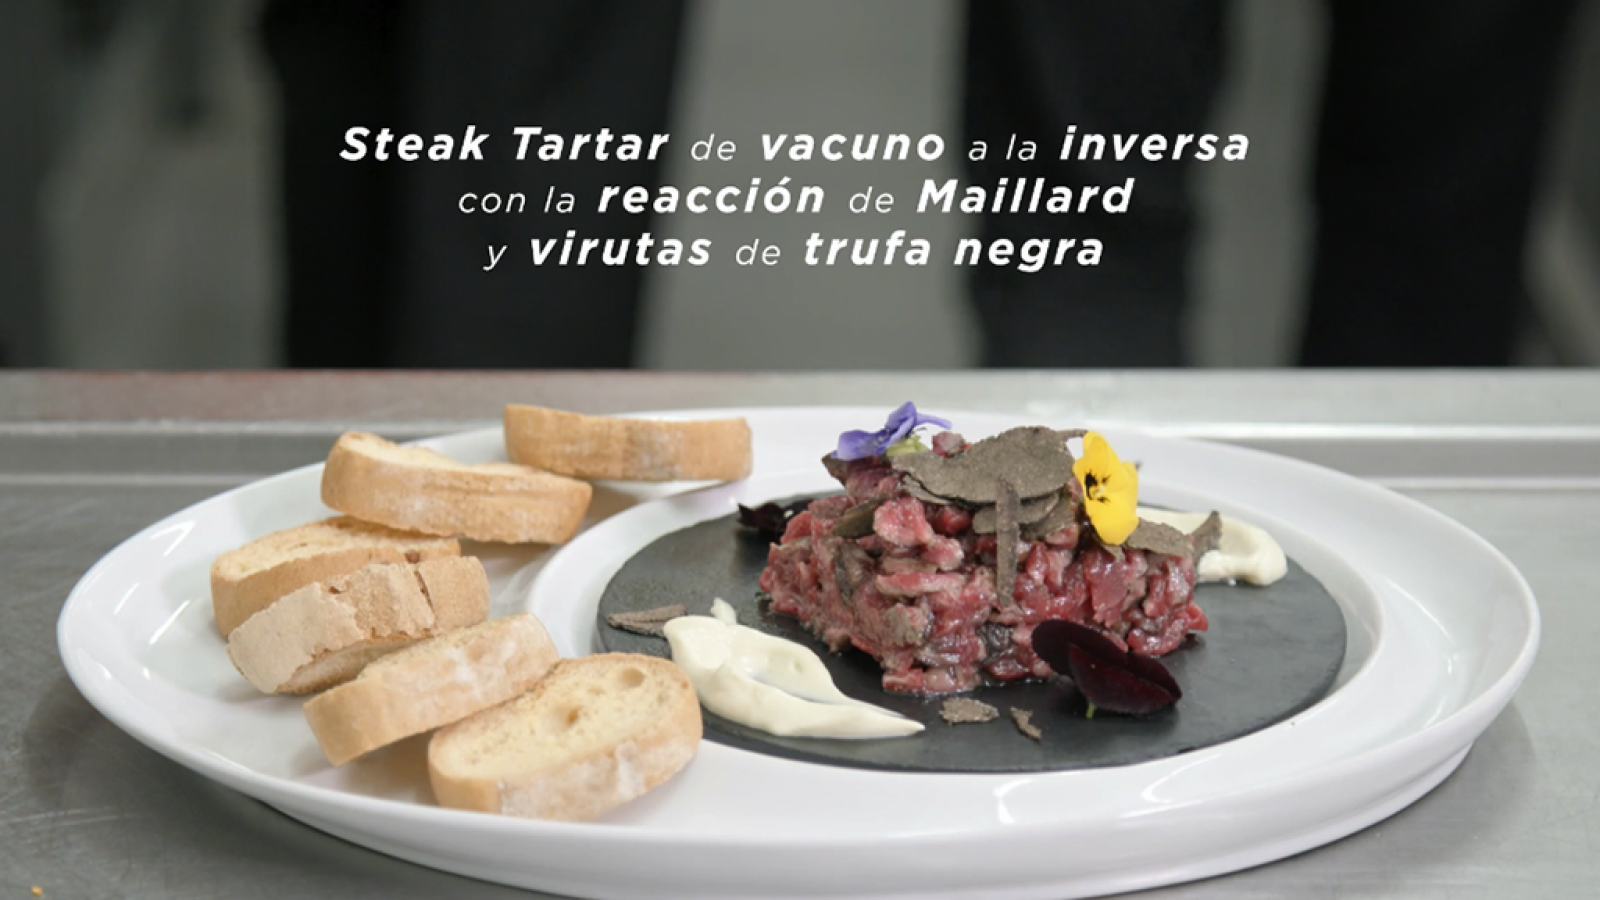  La Ciencia la Salud - Receta de Steak Tartar de vacuno a la inversa con la reacción de Maillard y virutas de trufa negra